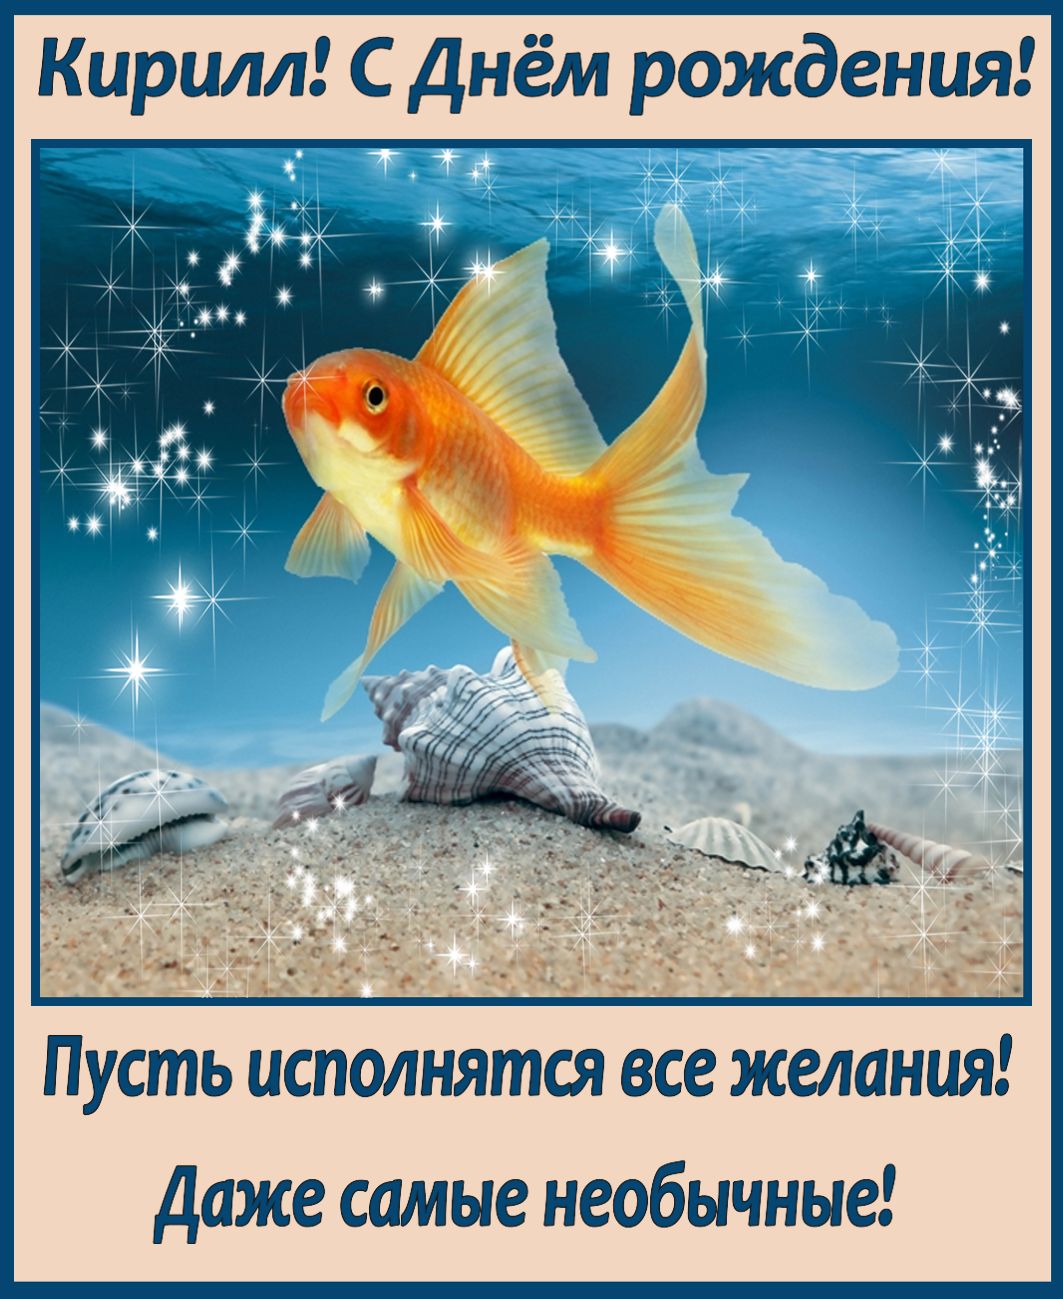 Пусть исполнятся все твои мечты и желания. Открытка исполнения всех желаний. Золотая рыбка. Рыбка исполнения желаний. Золотая рыбка исполнение желаний.